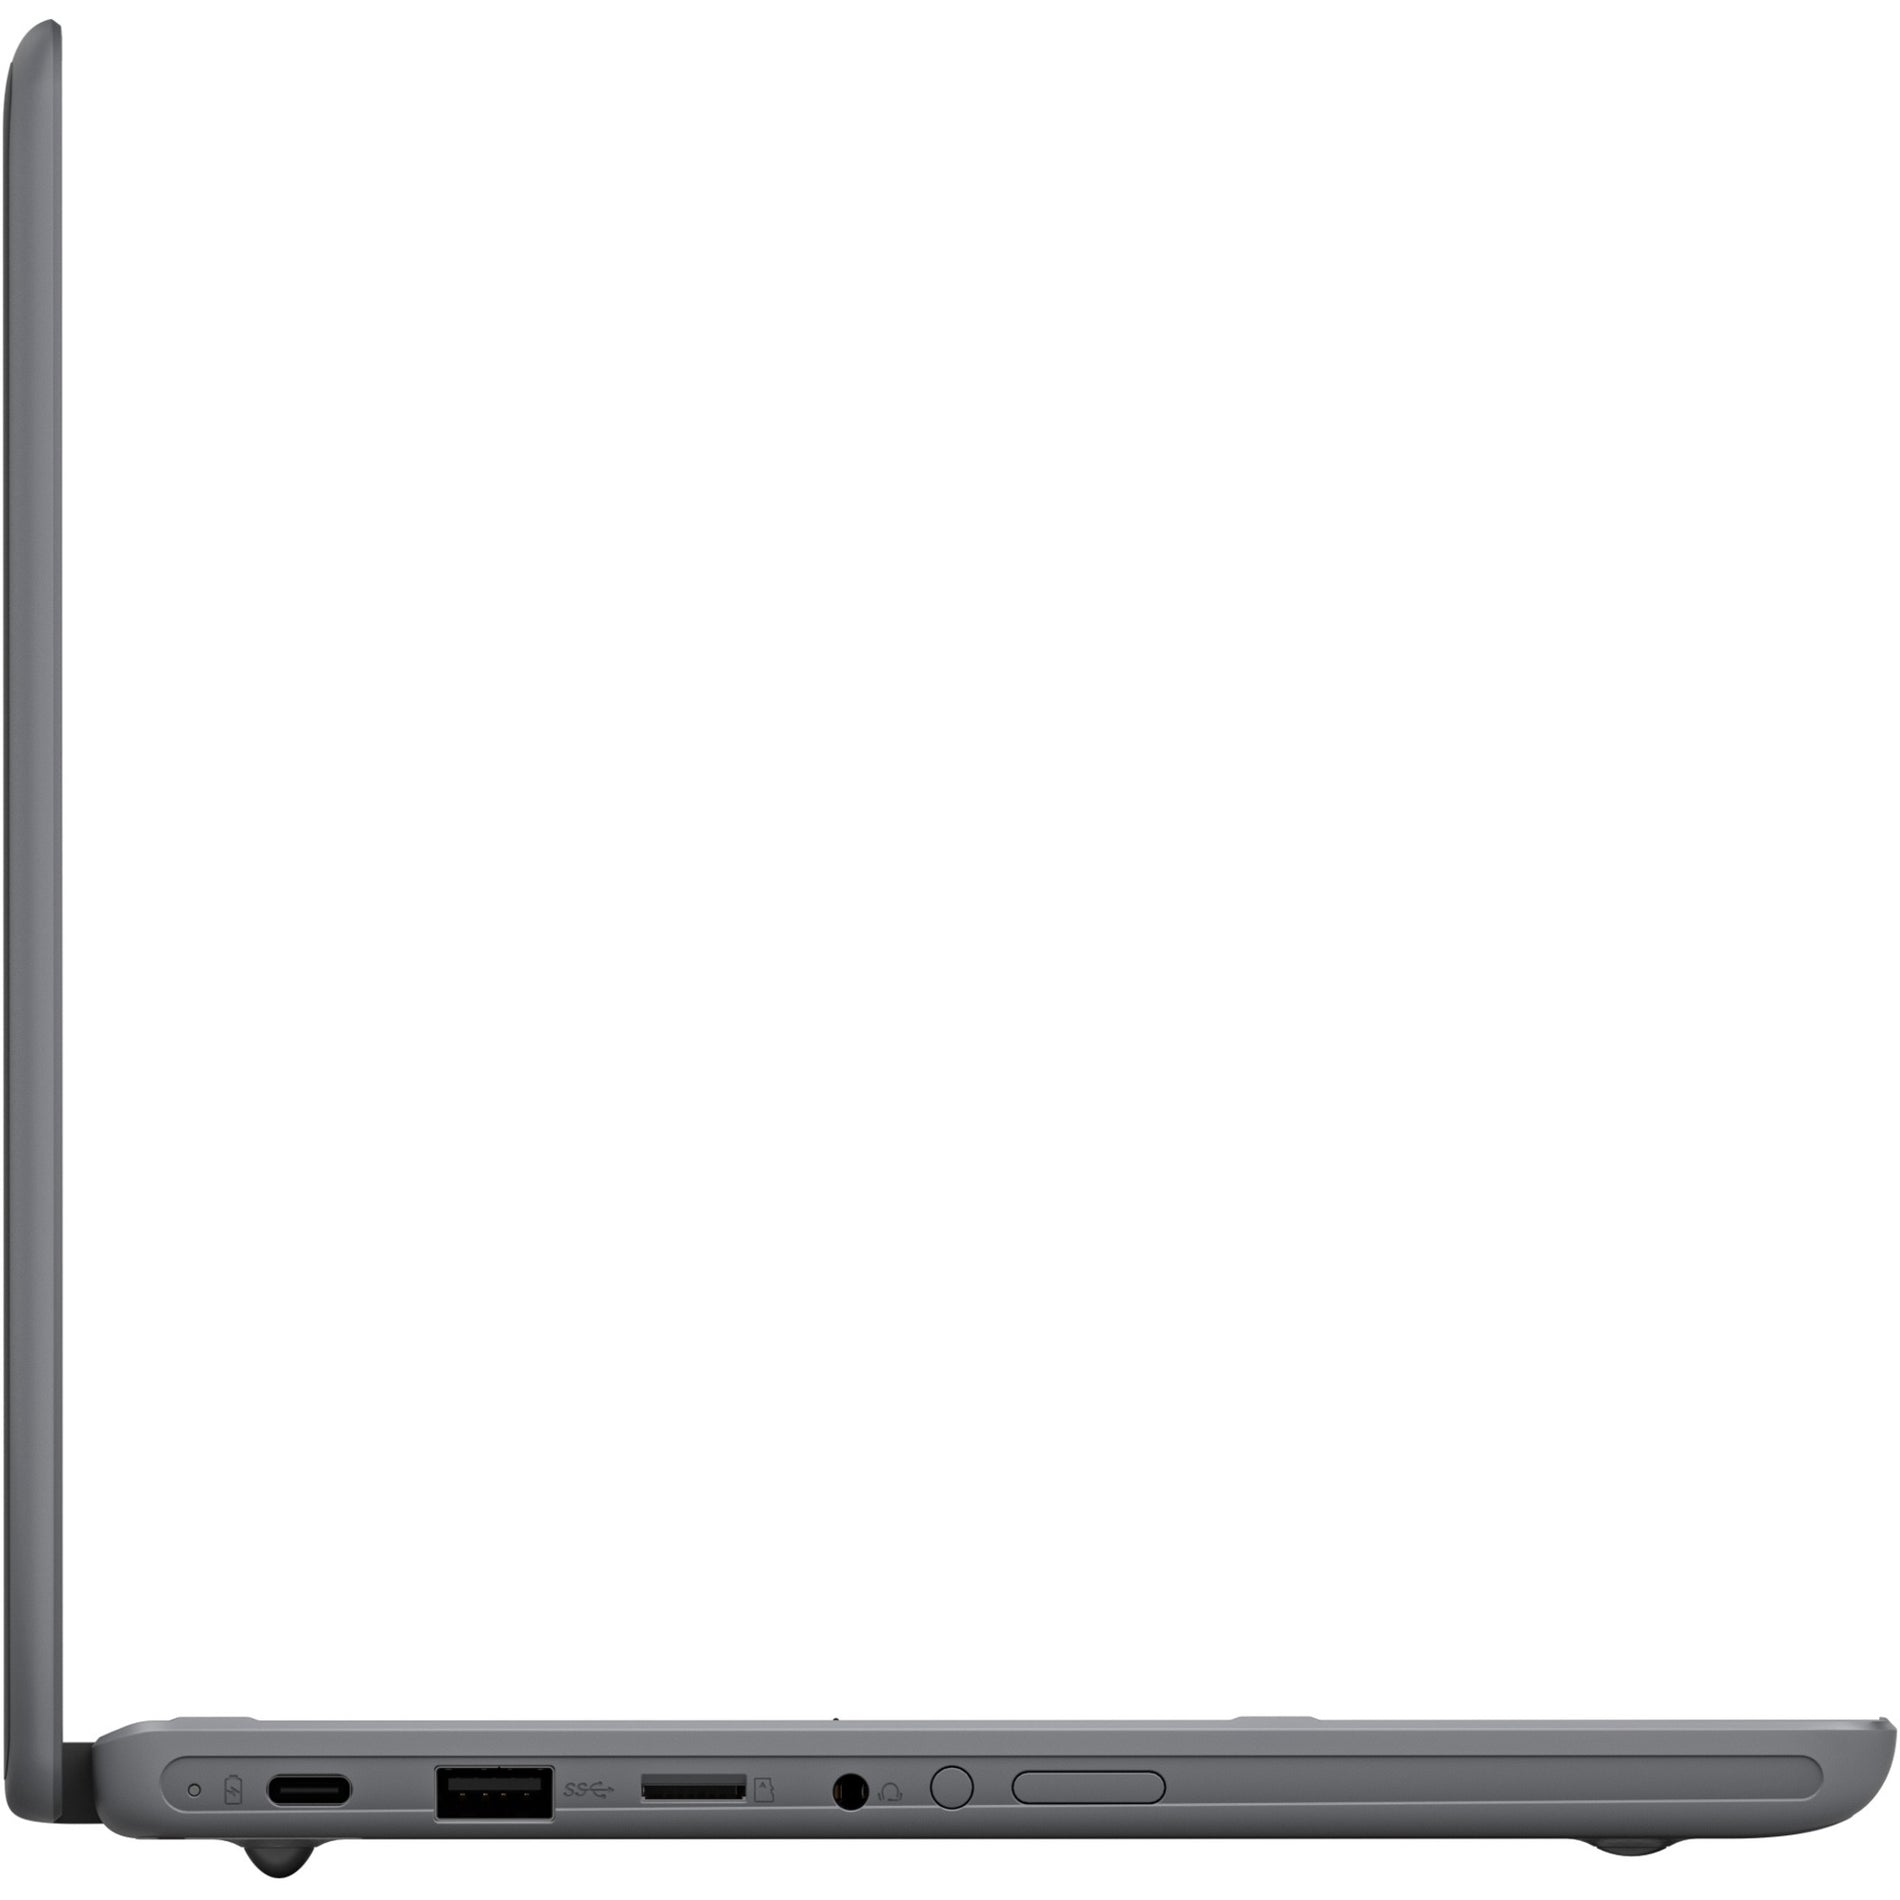 Asus CR1100FKA-YZ144T Chromebook Flip 2 in 1 Chromebook, 11.6" HD Touchscreen, Intel Celeron N5100, 8GB RAM, 64GB Flash Storage